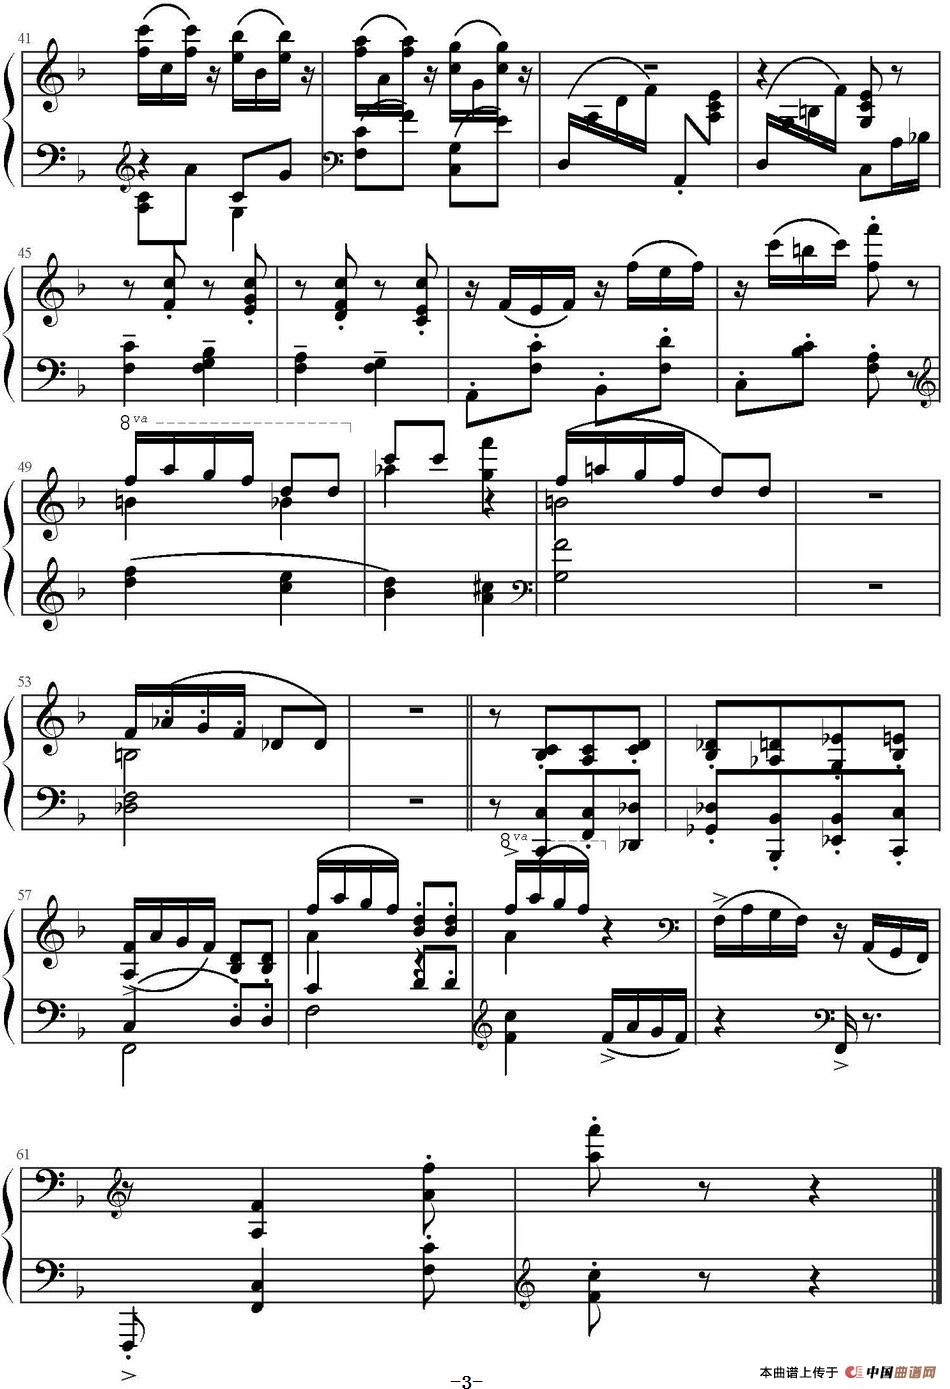 《阿肯色的旅游者》钢琴曲谱图分享